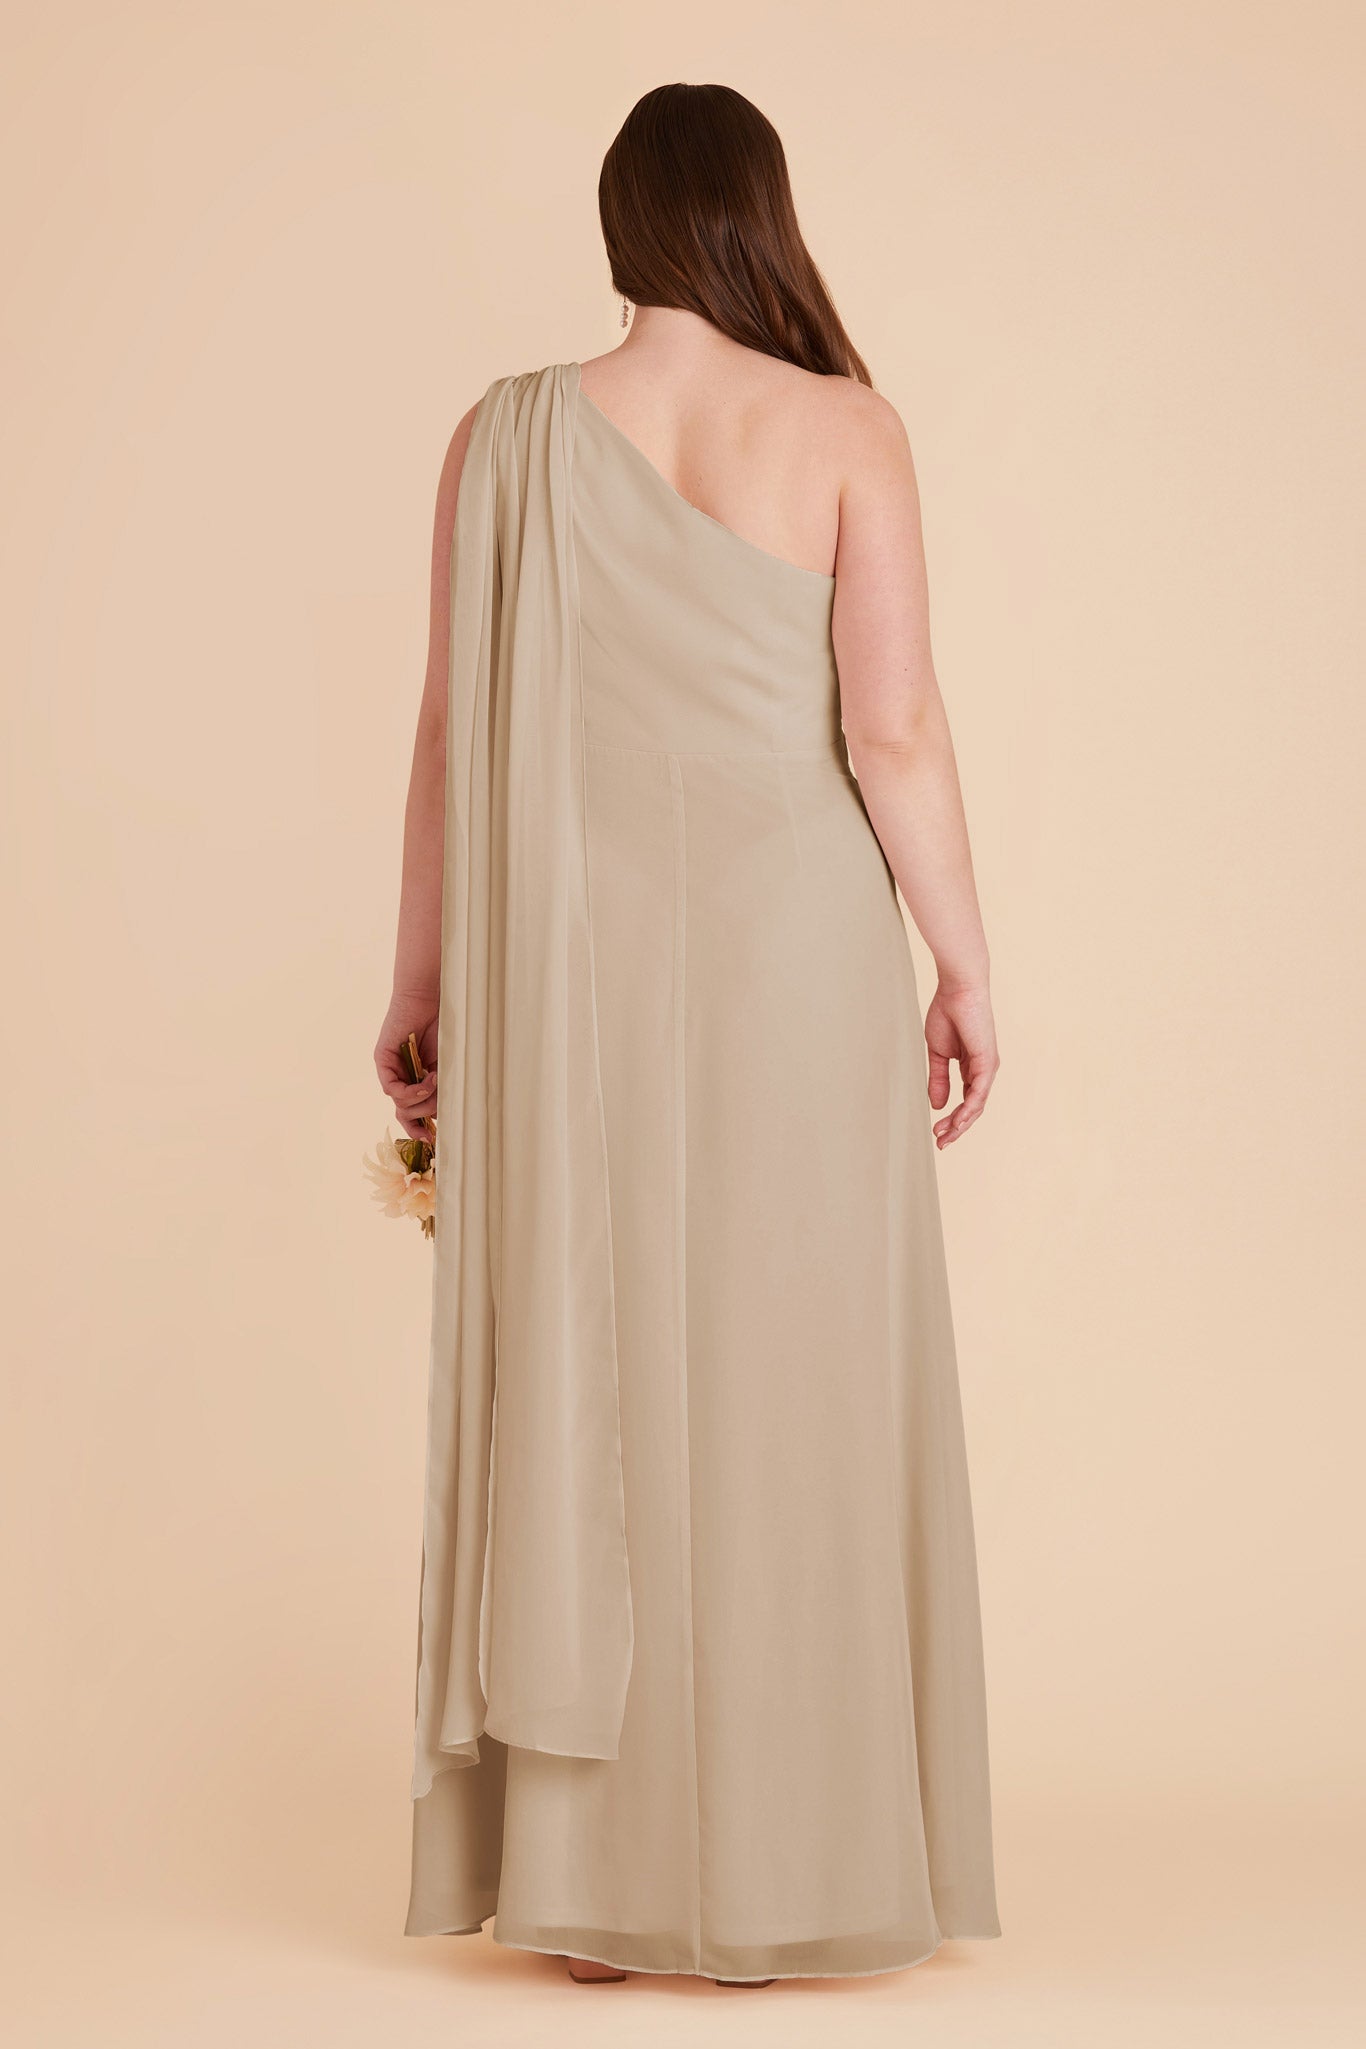 Almond Melissa Chiffon Dress by Birdy Grey